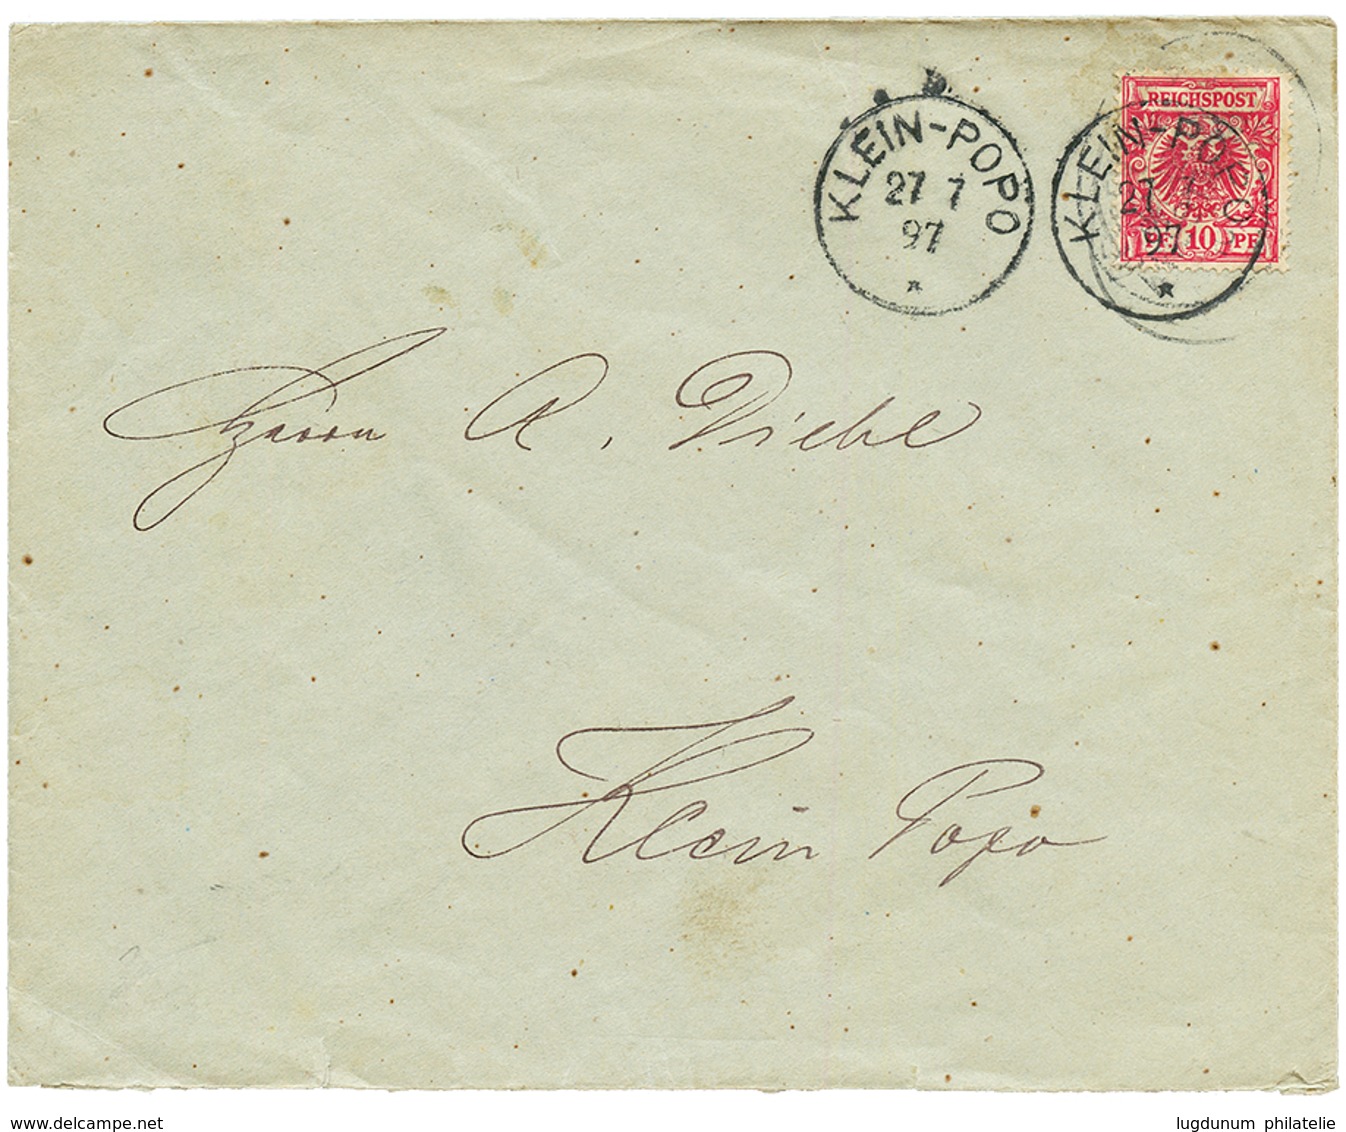 TOGO - VORLAUFER : 1897 GERMANY 10pf Canc. KLEIN-POPO On Envelope To KLEIN-POPO. Vf. - Togo